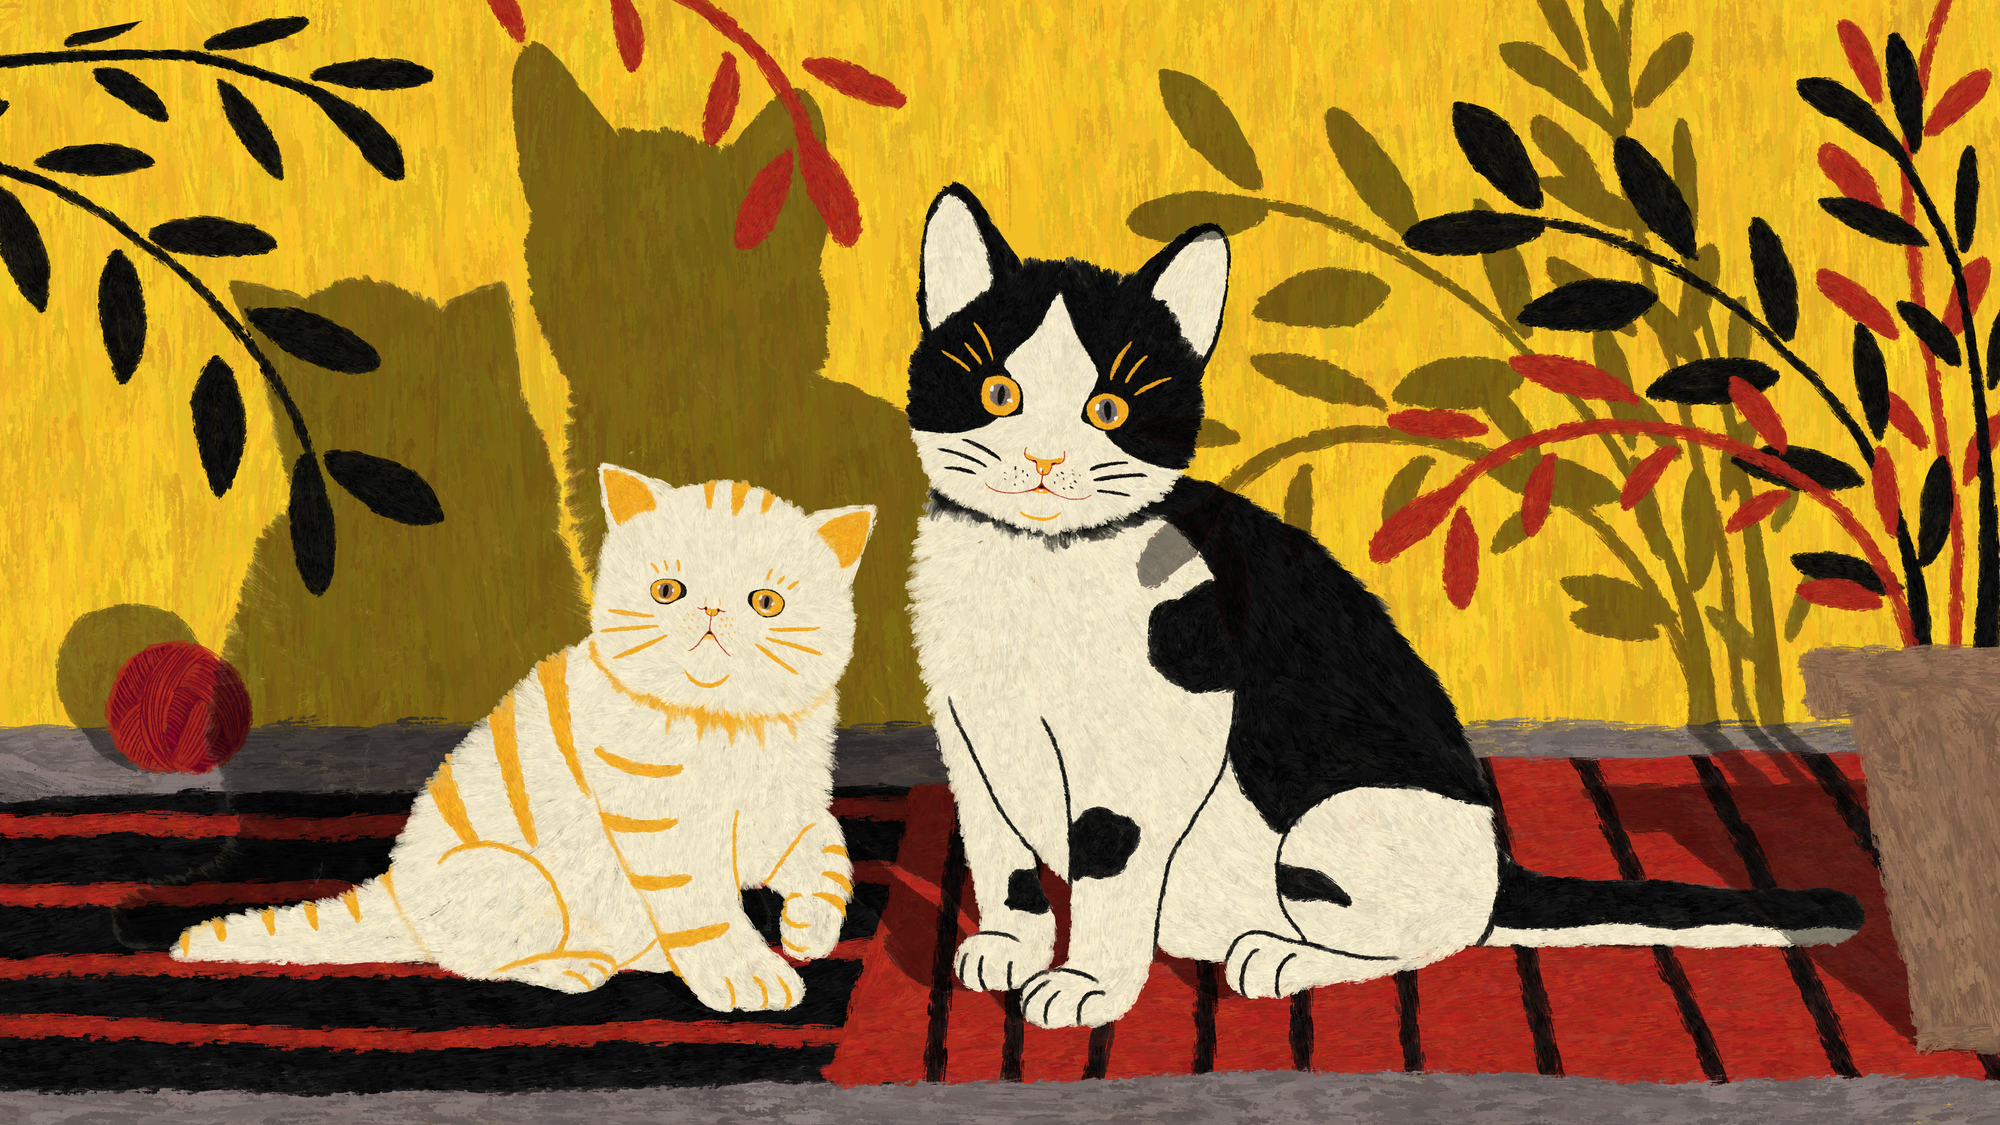 Năm Quý Mão tản mạn chút chuyện con mèo: Biểu tượng đặc sắc đại diện cho sự tinh anh trong văn hoá , gửi gắm giấc mộng phồn thịnh, an yên - Ảnh 4.